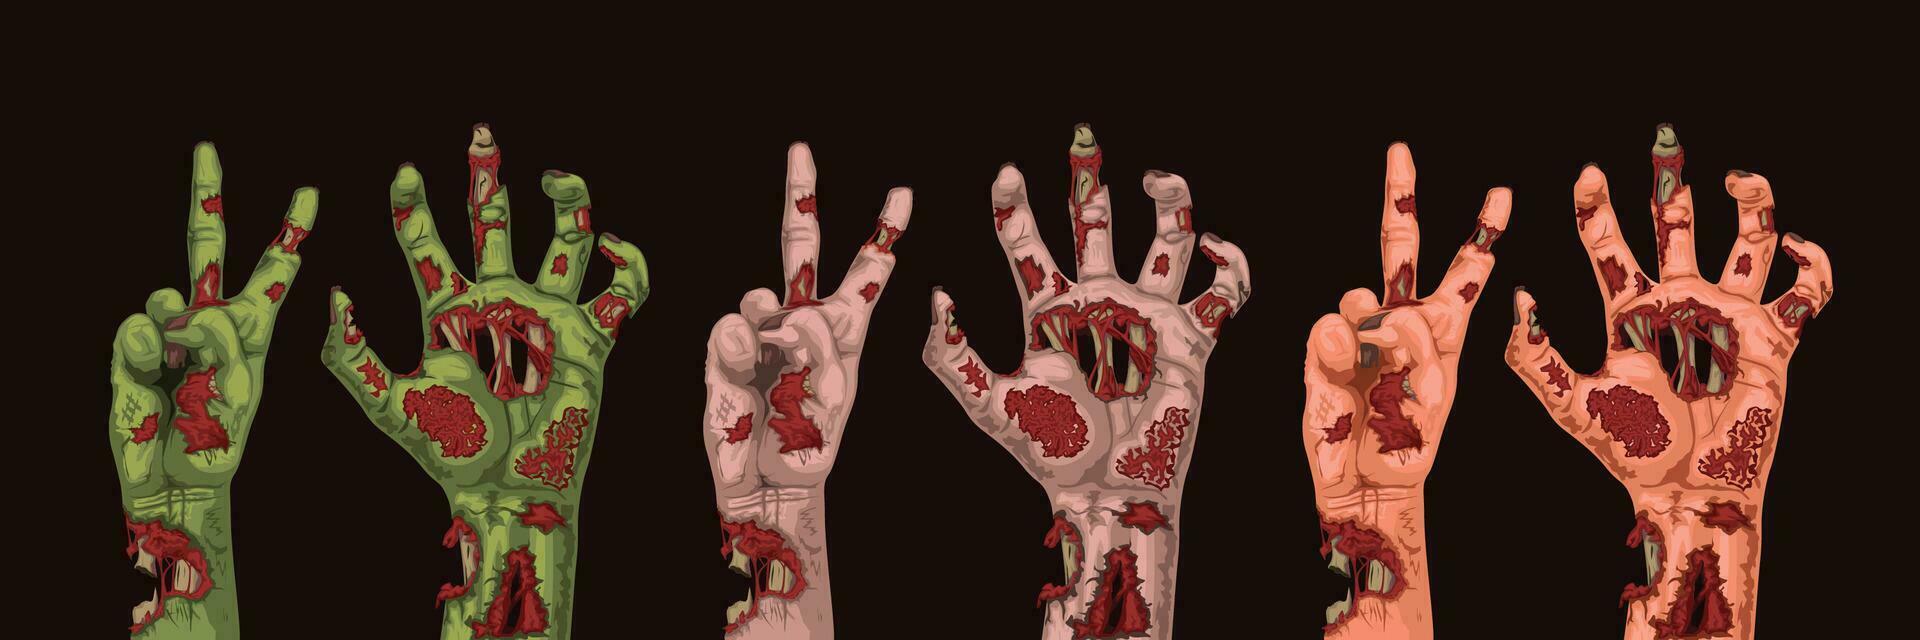 verschillend kleuren zombie handen vector